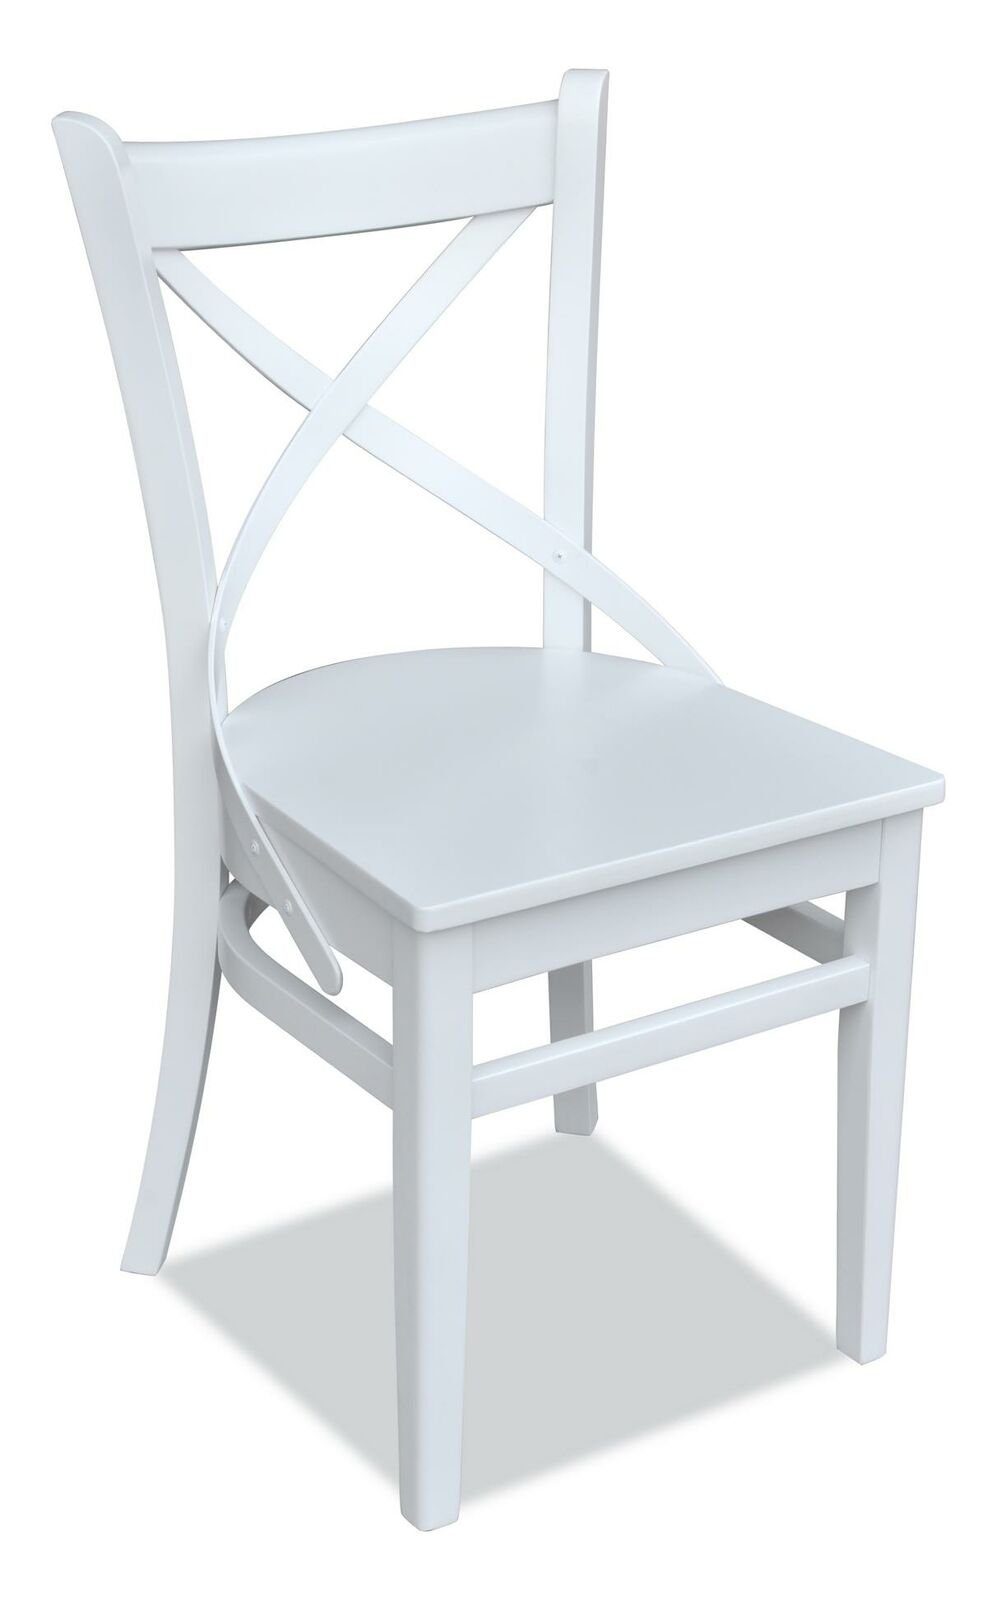 Sitz Textil Set Stuhl, Moderne Design Garnitur Zimmer Ess Holz JVmoebel Stuhl Polster Stühle 4x